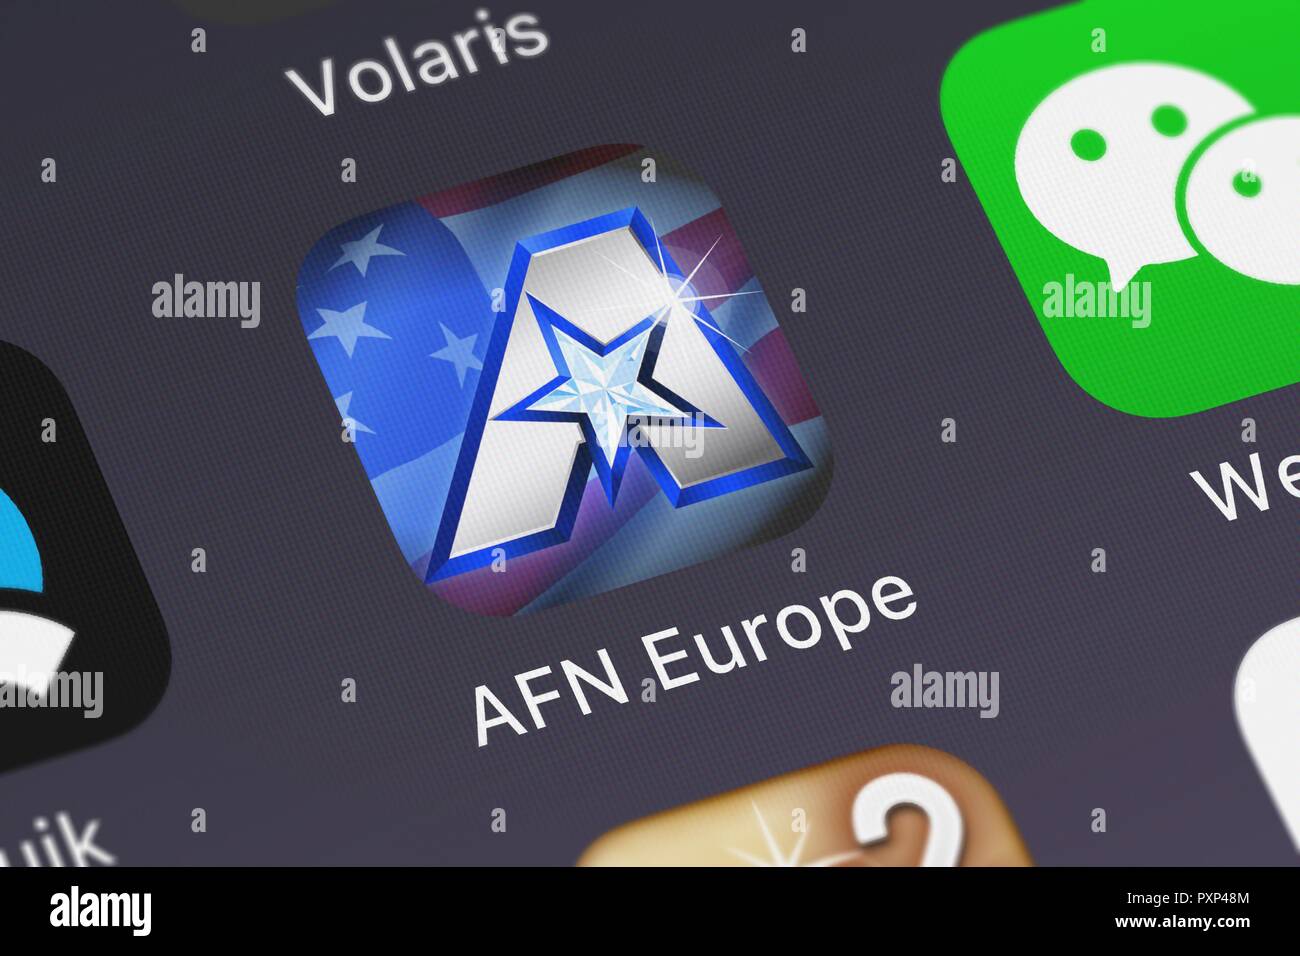 Londres, Royaume-Uni - Octobre 23, 2018 : l'application mobile de l'Europe de l'APN de doapp, inc sur un écran d'iPhone. Banque D'Images